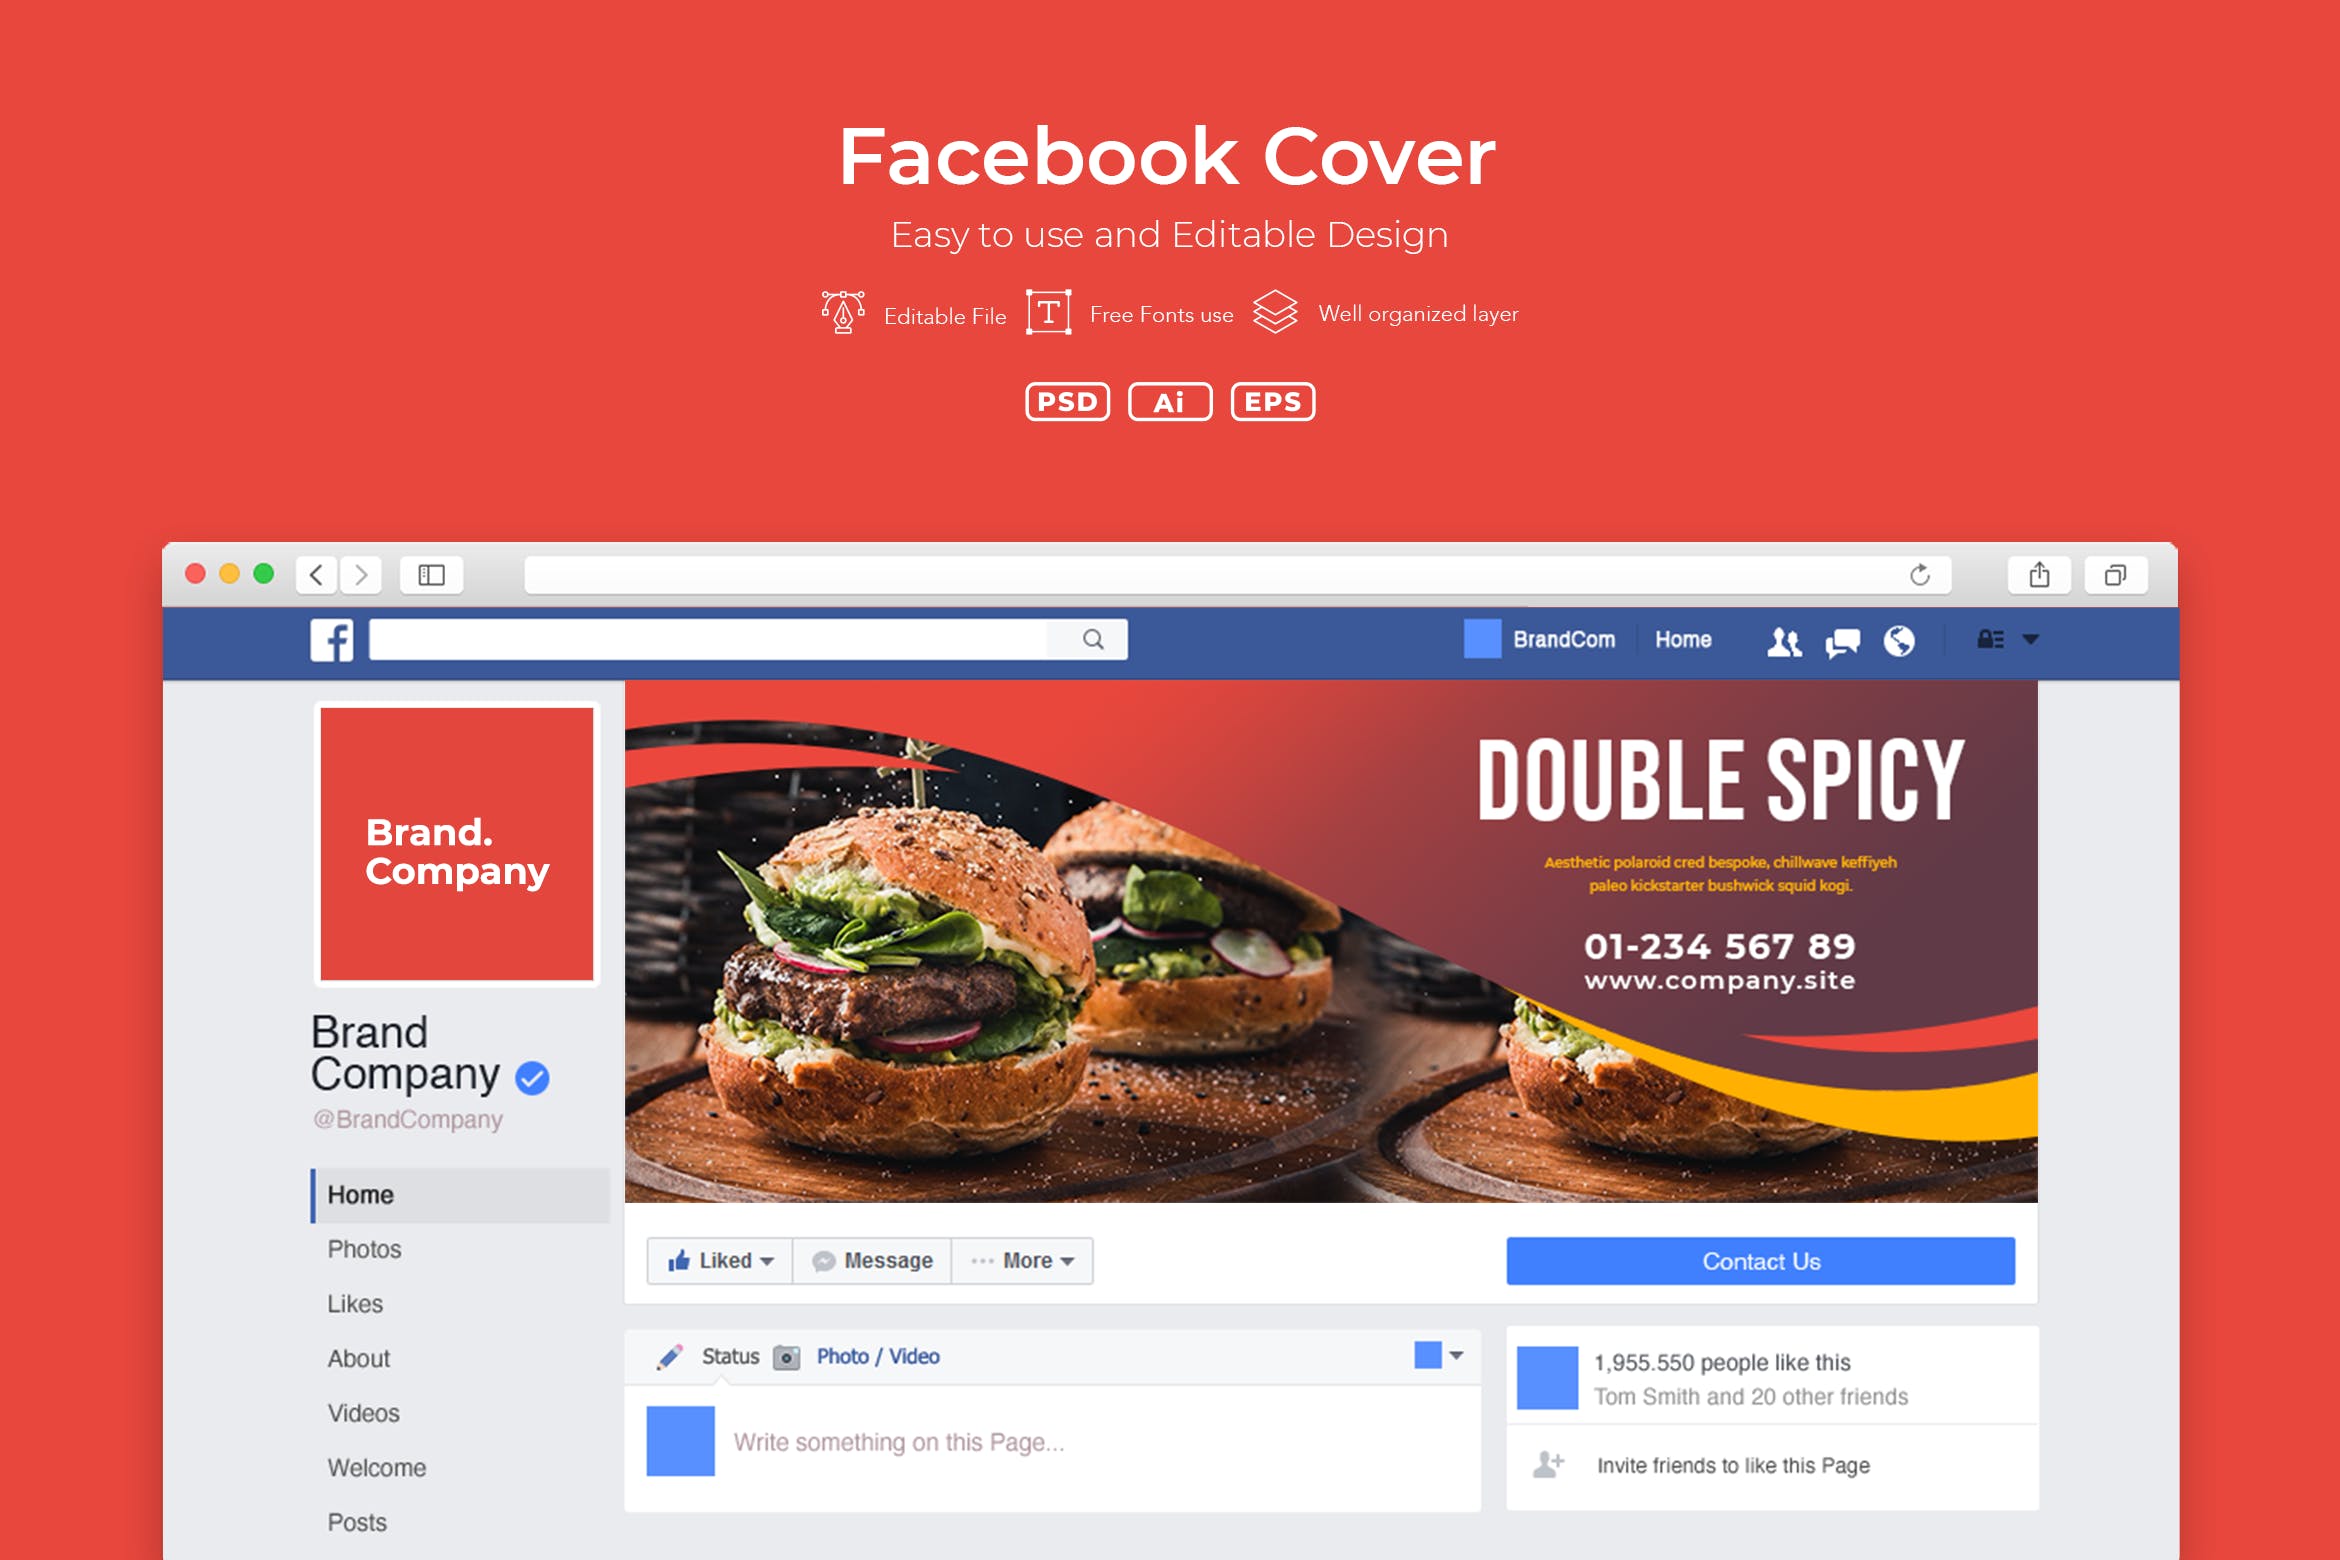 企业Facebook账号主页封面设计模板蚂蚁素材精选v2.1 ADL Facebook Cover.v2.1插图